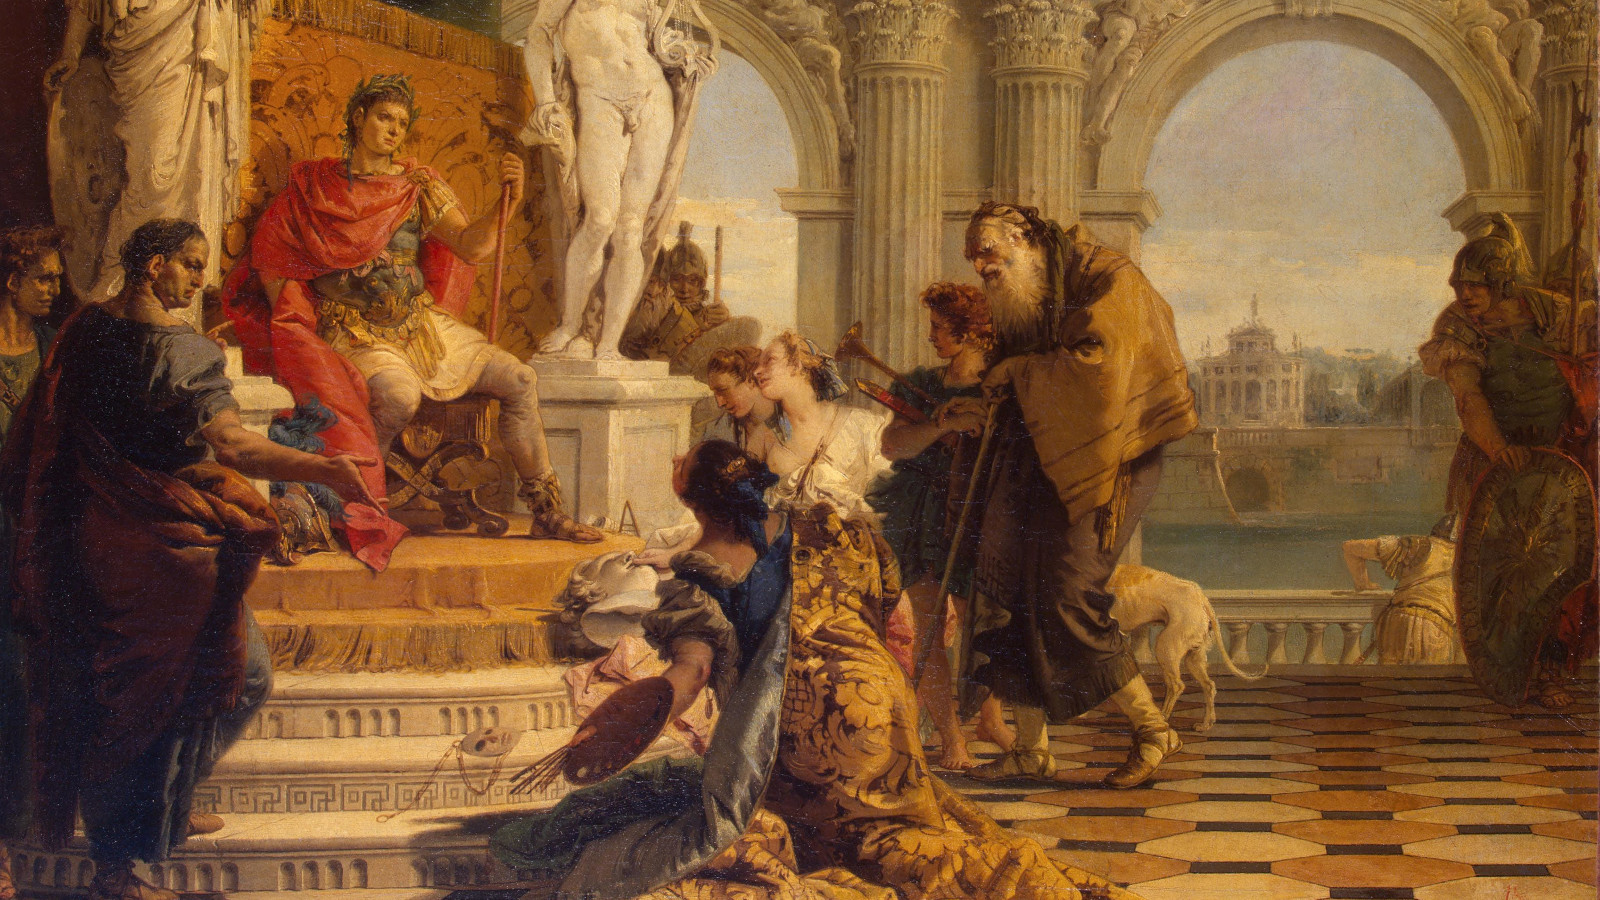 Kuvassa on kohtaus, jossa keisari Augustukselle esitellään vapaita taiteita.  Esittelijät ovat keisarin istuimen alapuolella.